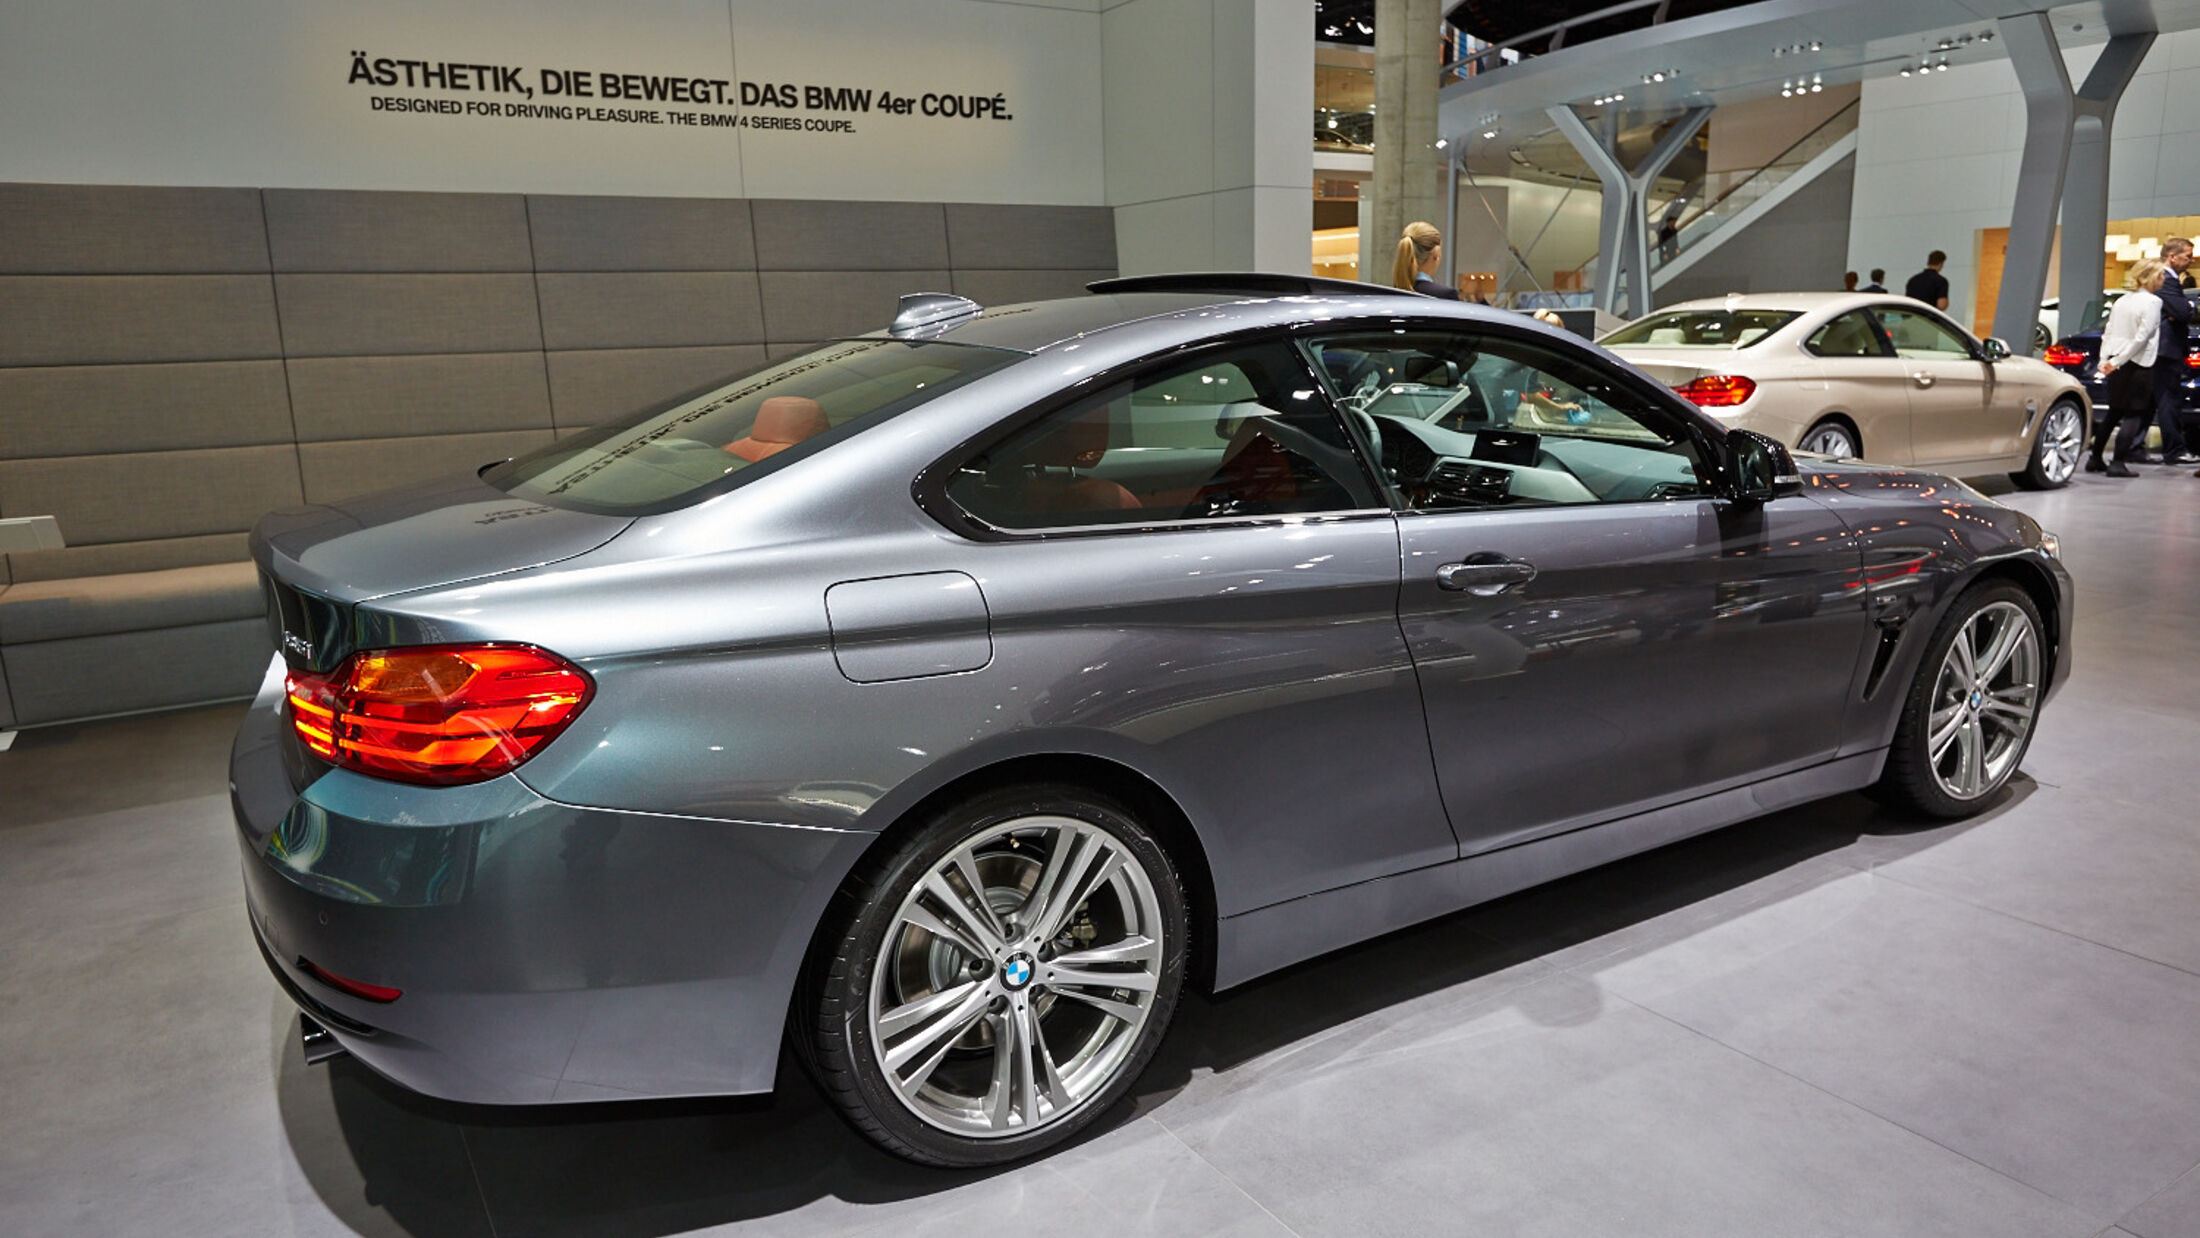 BMW 4er Coupé auf der IAA 2013: Es lebe die neue Baureihe